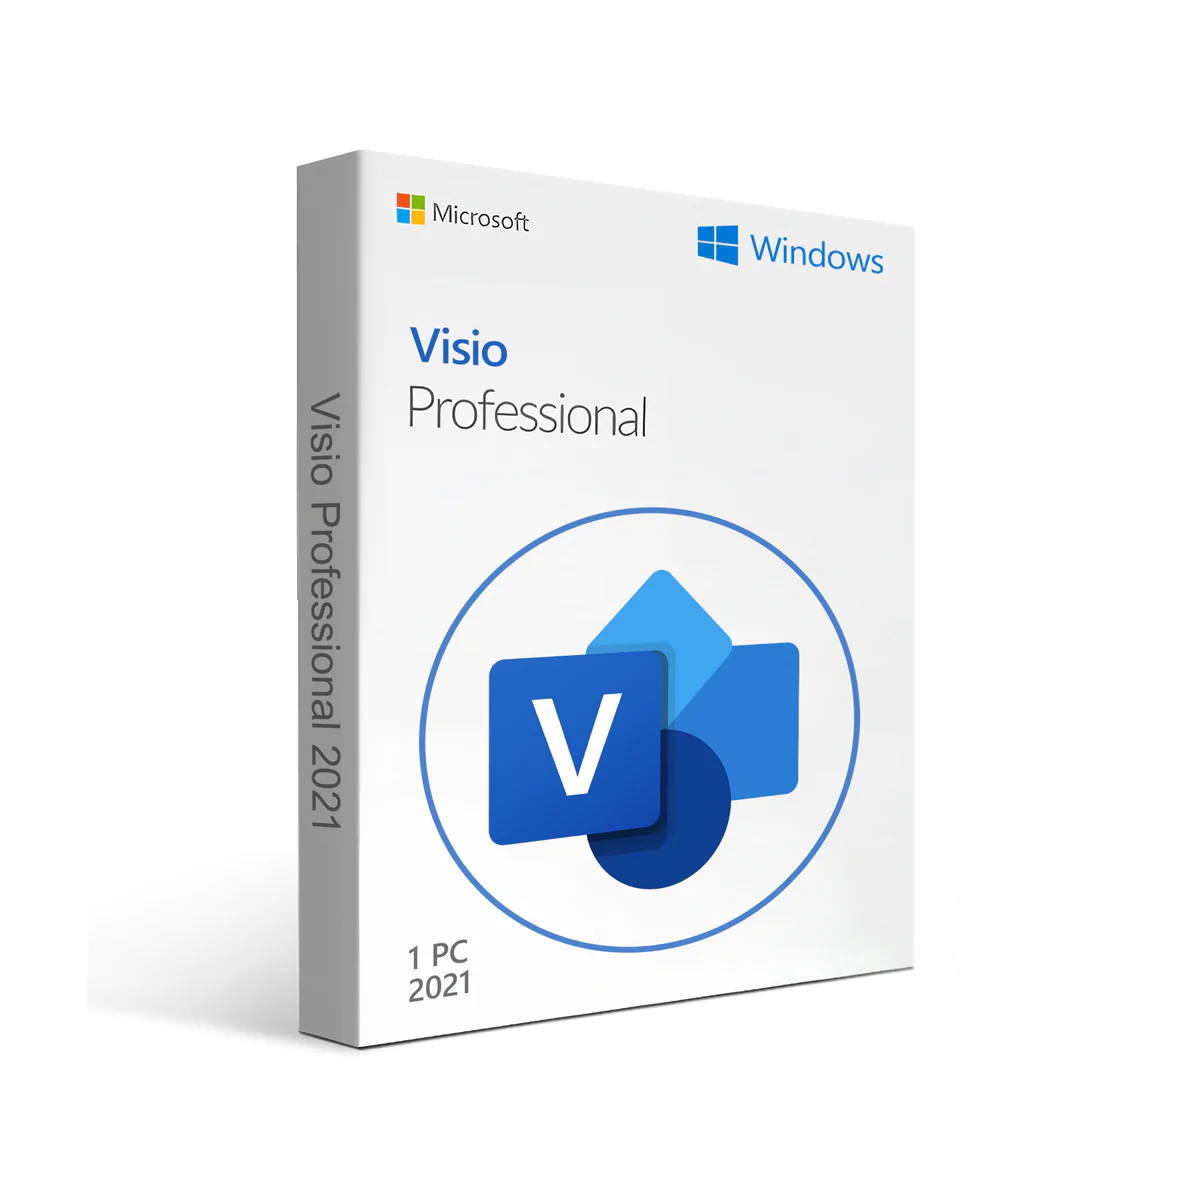 Visual Studio 2022 Professional ESD - Download + Nota Fiscal - Cobype -  Revenda Autorizada Microsoft